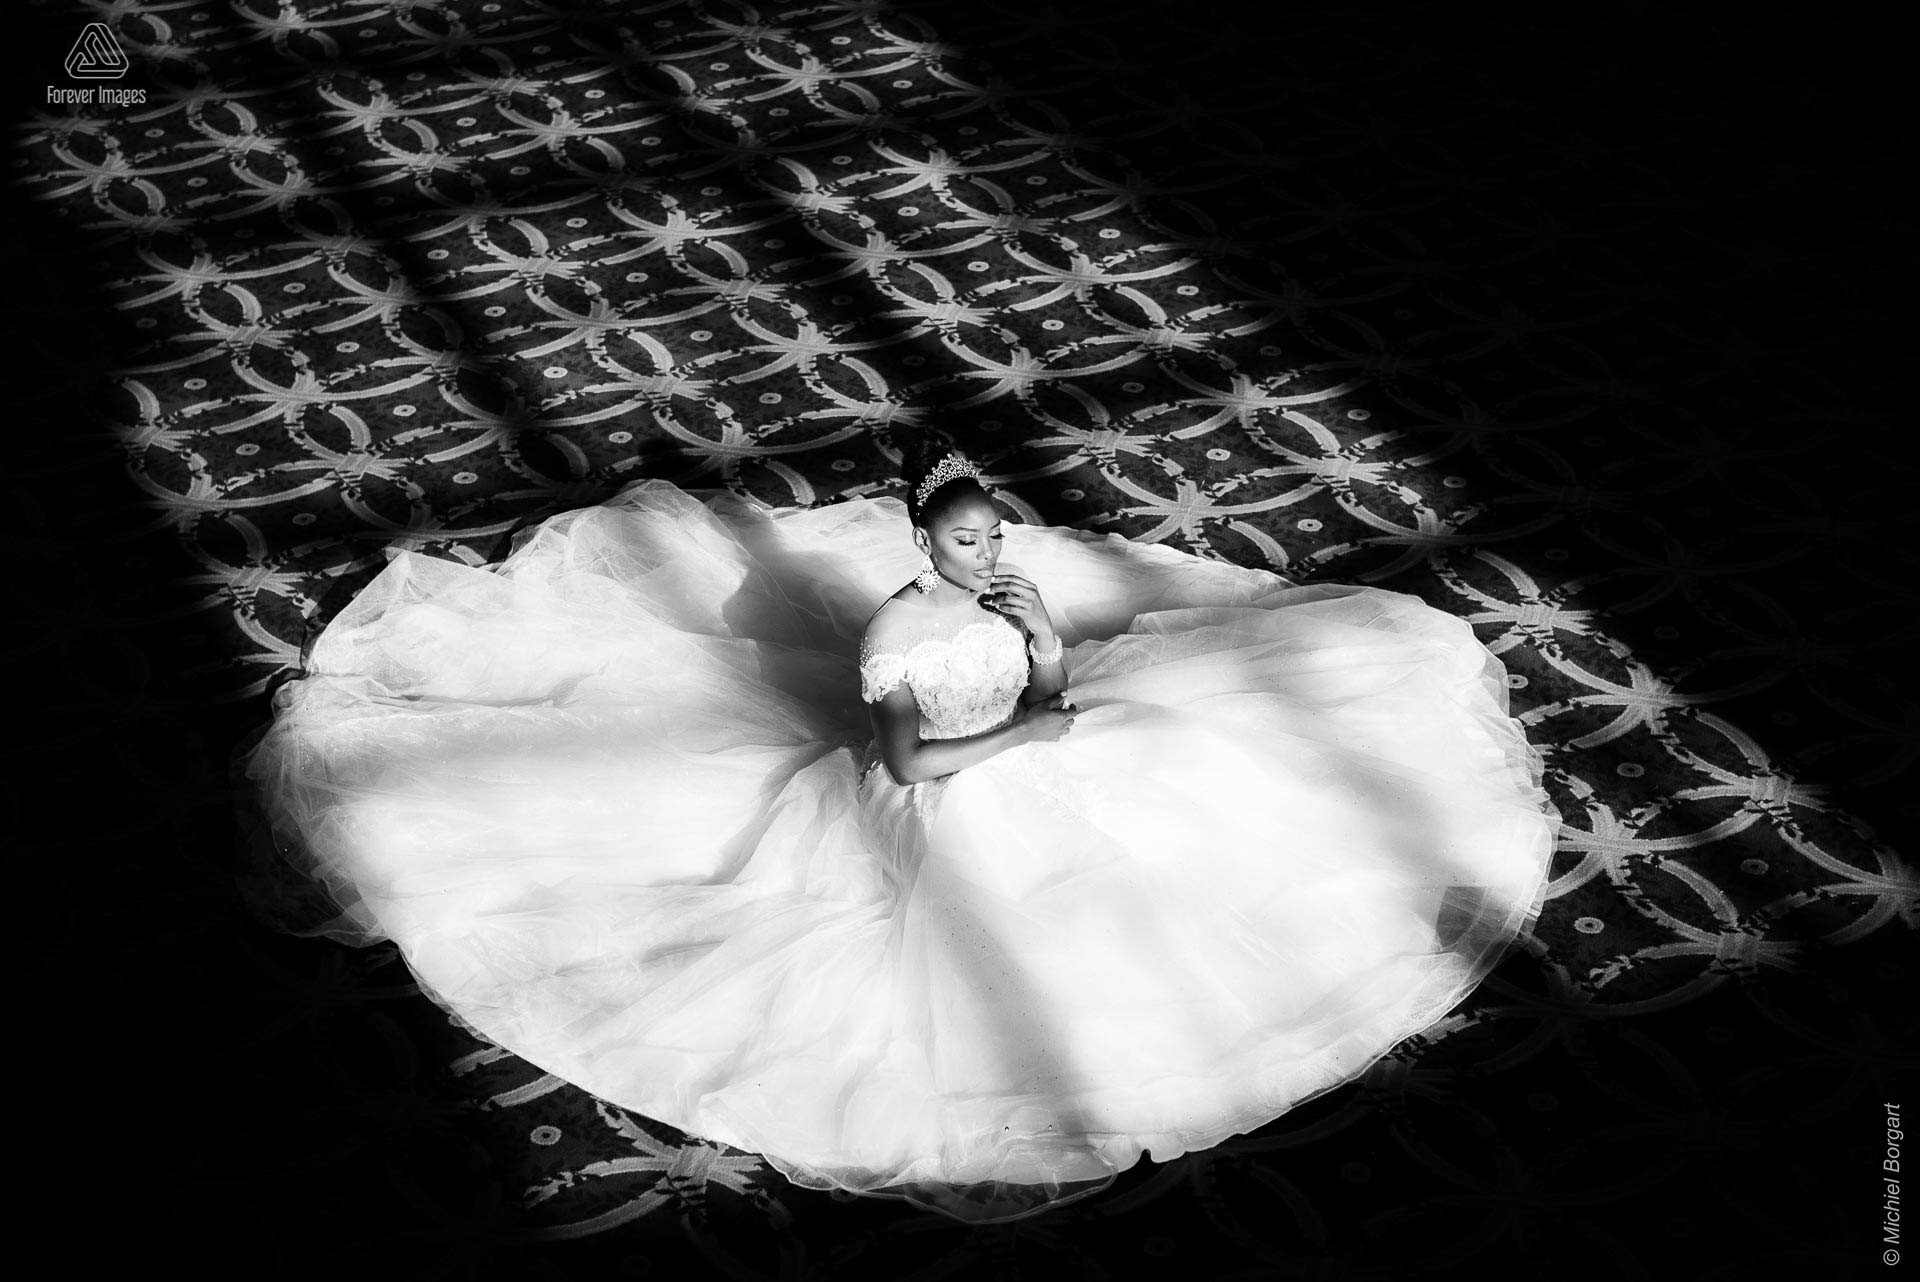 Fashionfoto zwart-wit bruidsjurk zittend grond zonlicht | Mariana Pietersz Duc Nguyen Koepelkerk Amsterdam | Fashionfotograaf Michiel Borgart - Forever Images.